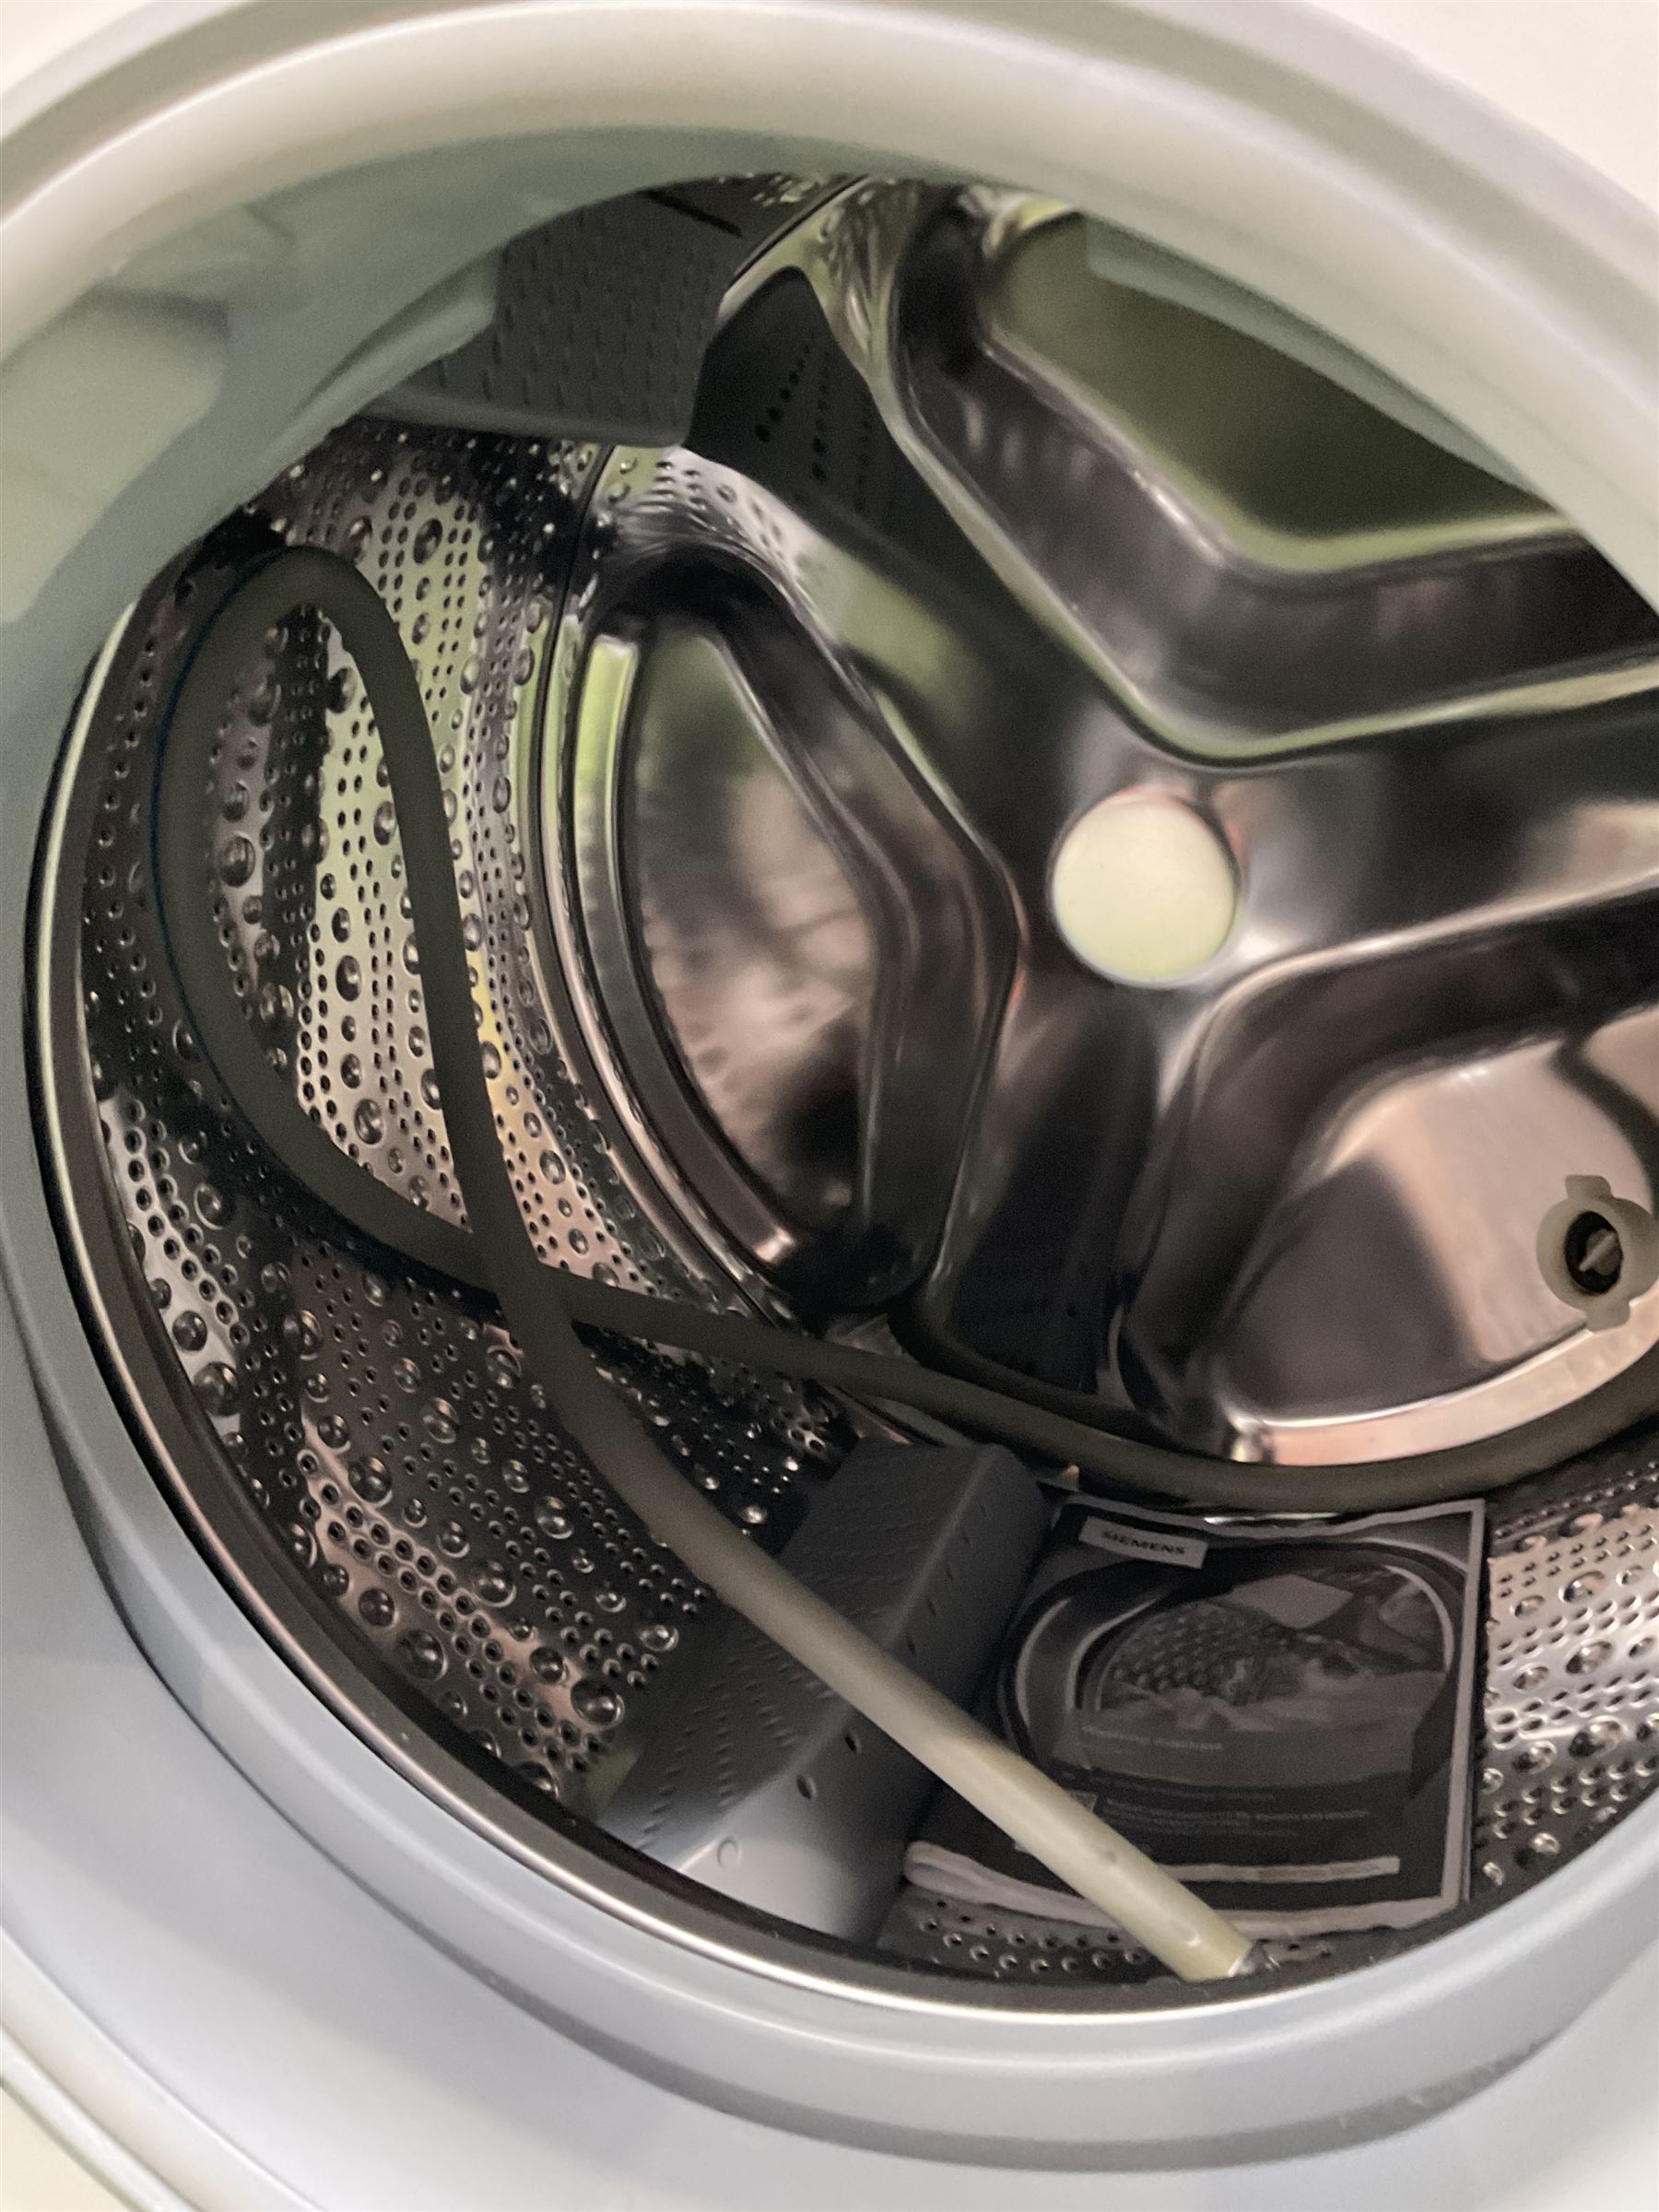 Siemens IQ500 8kg washing machine - Image 3 of 3